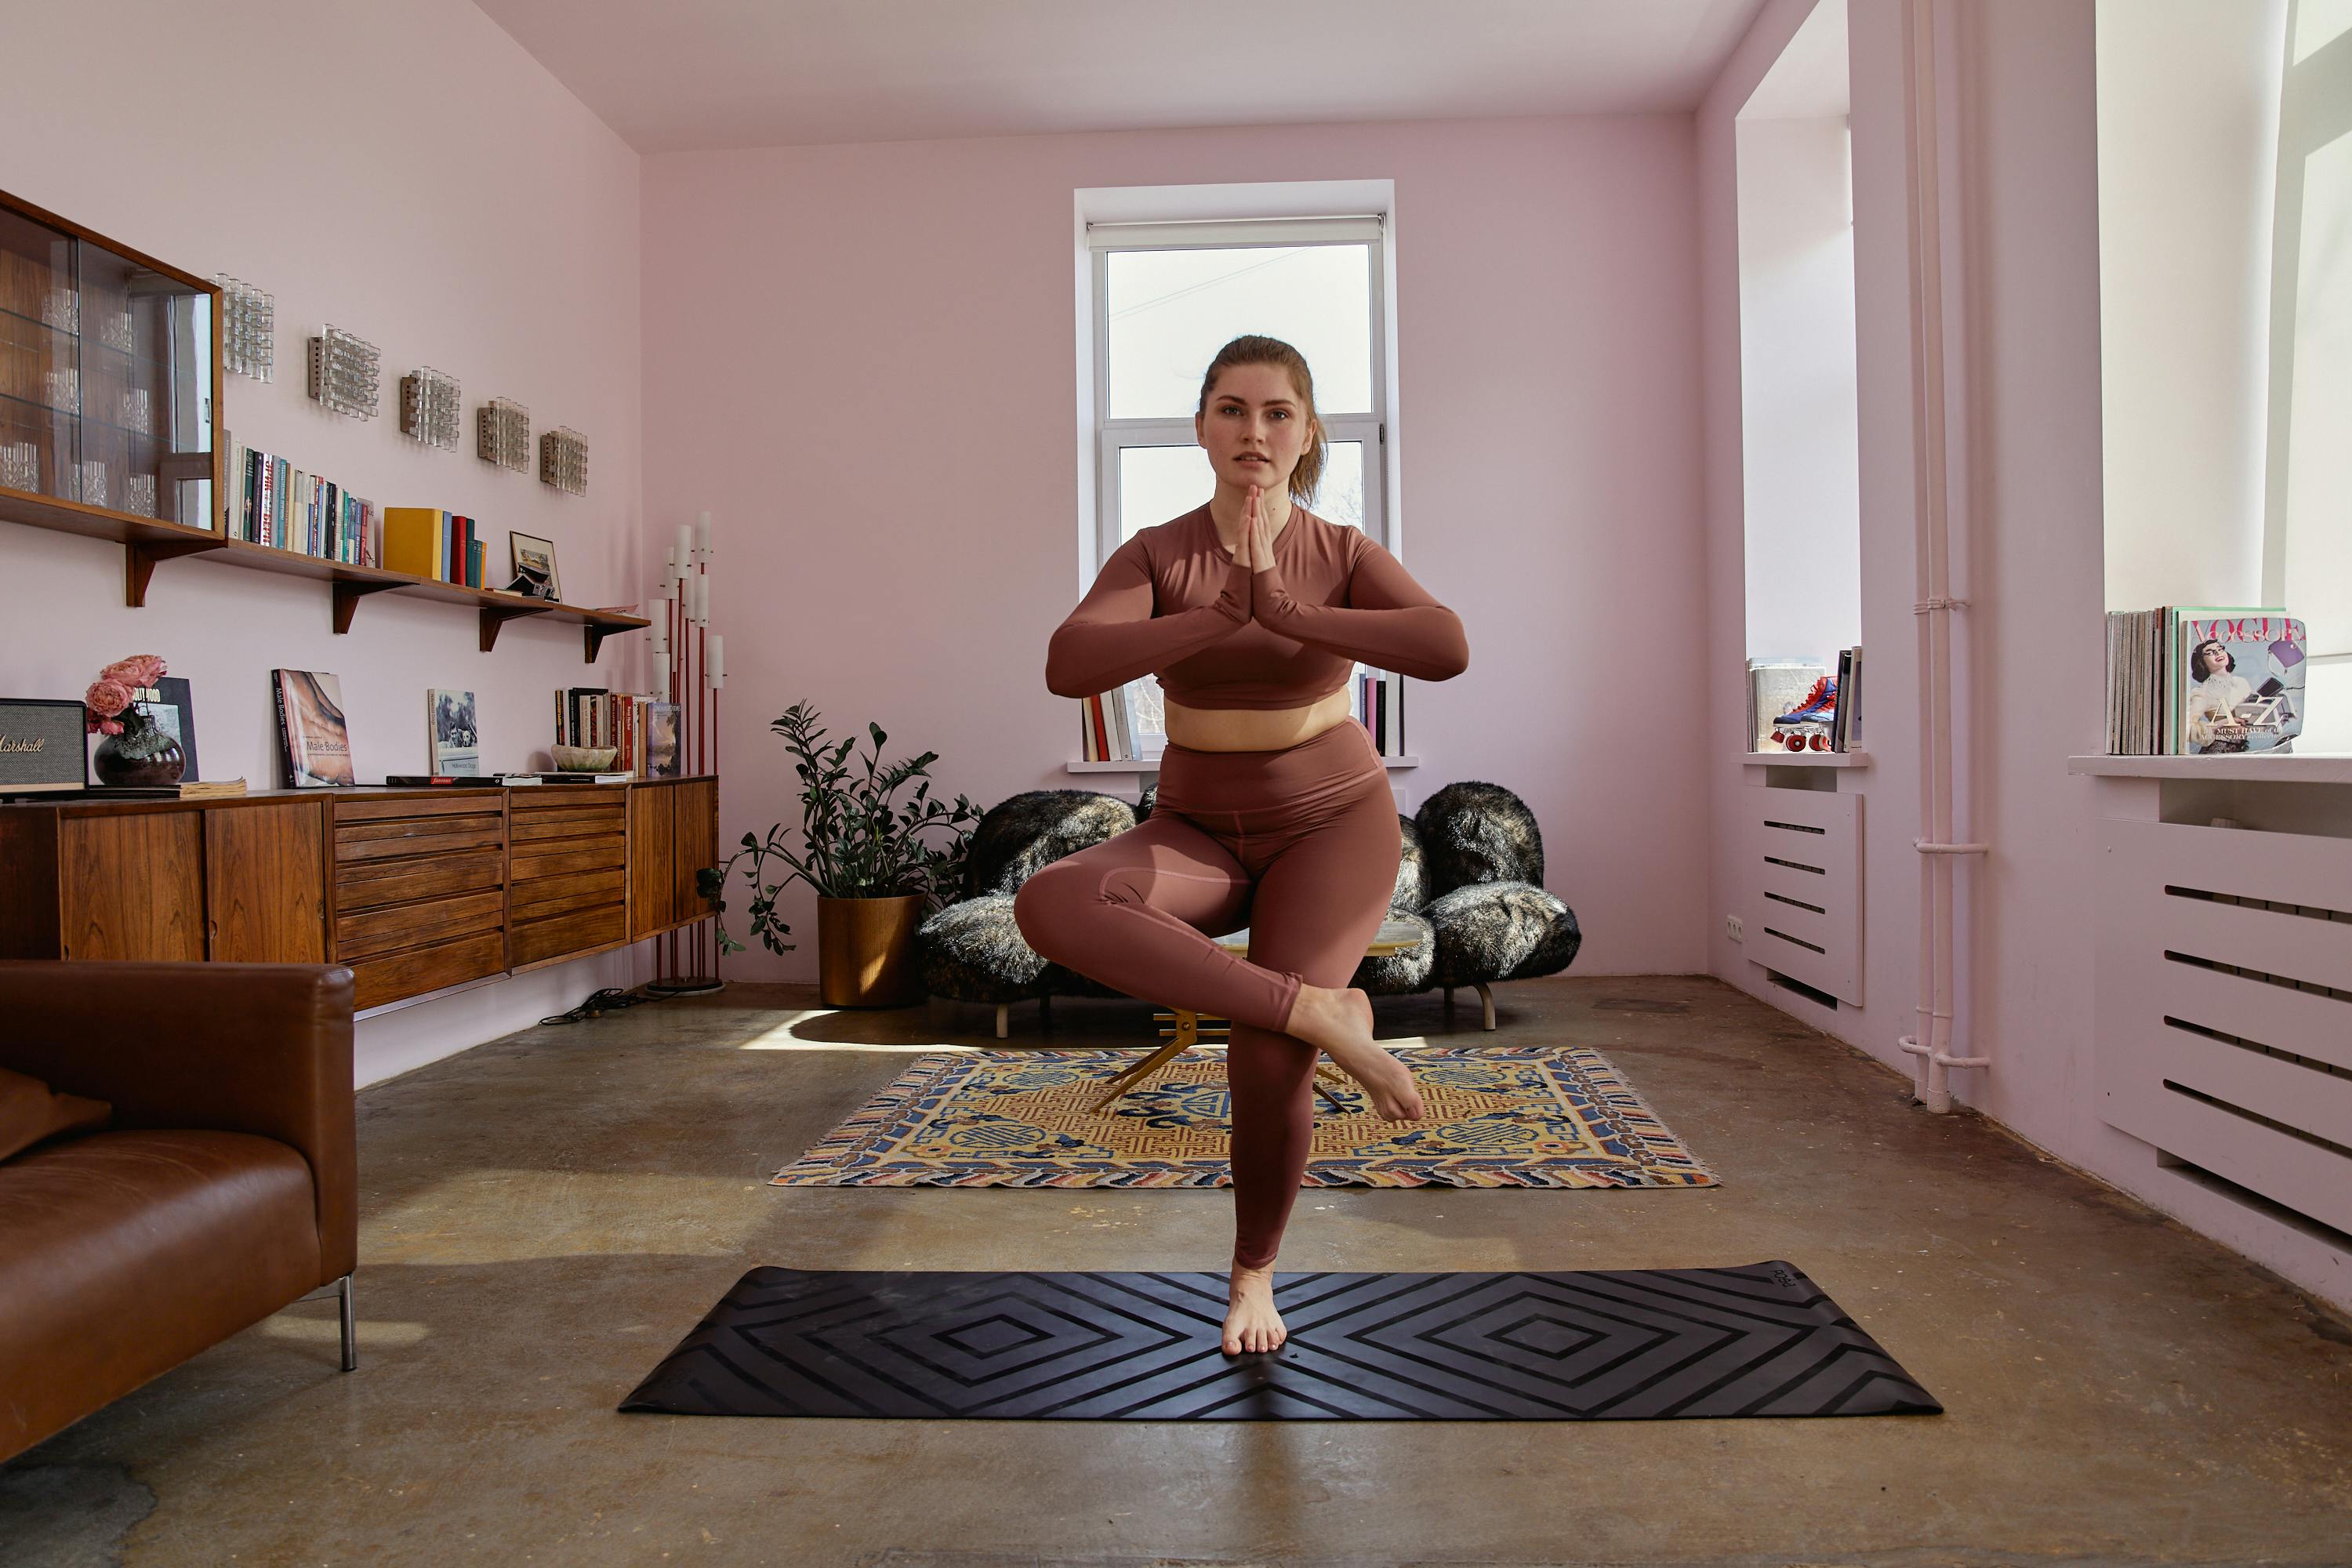 Woman Yoga Pose